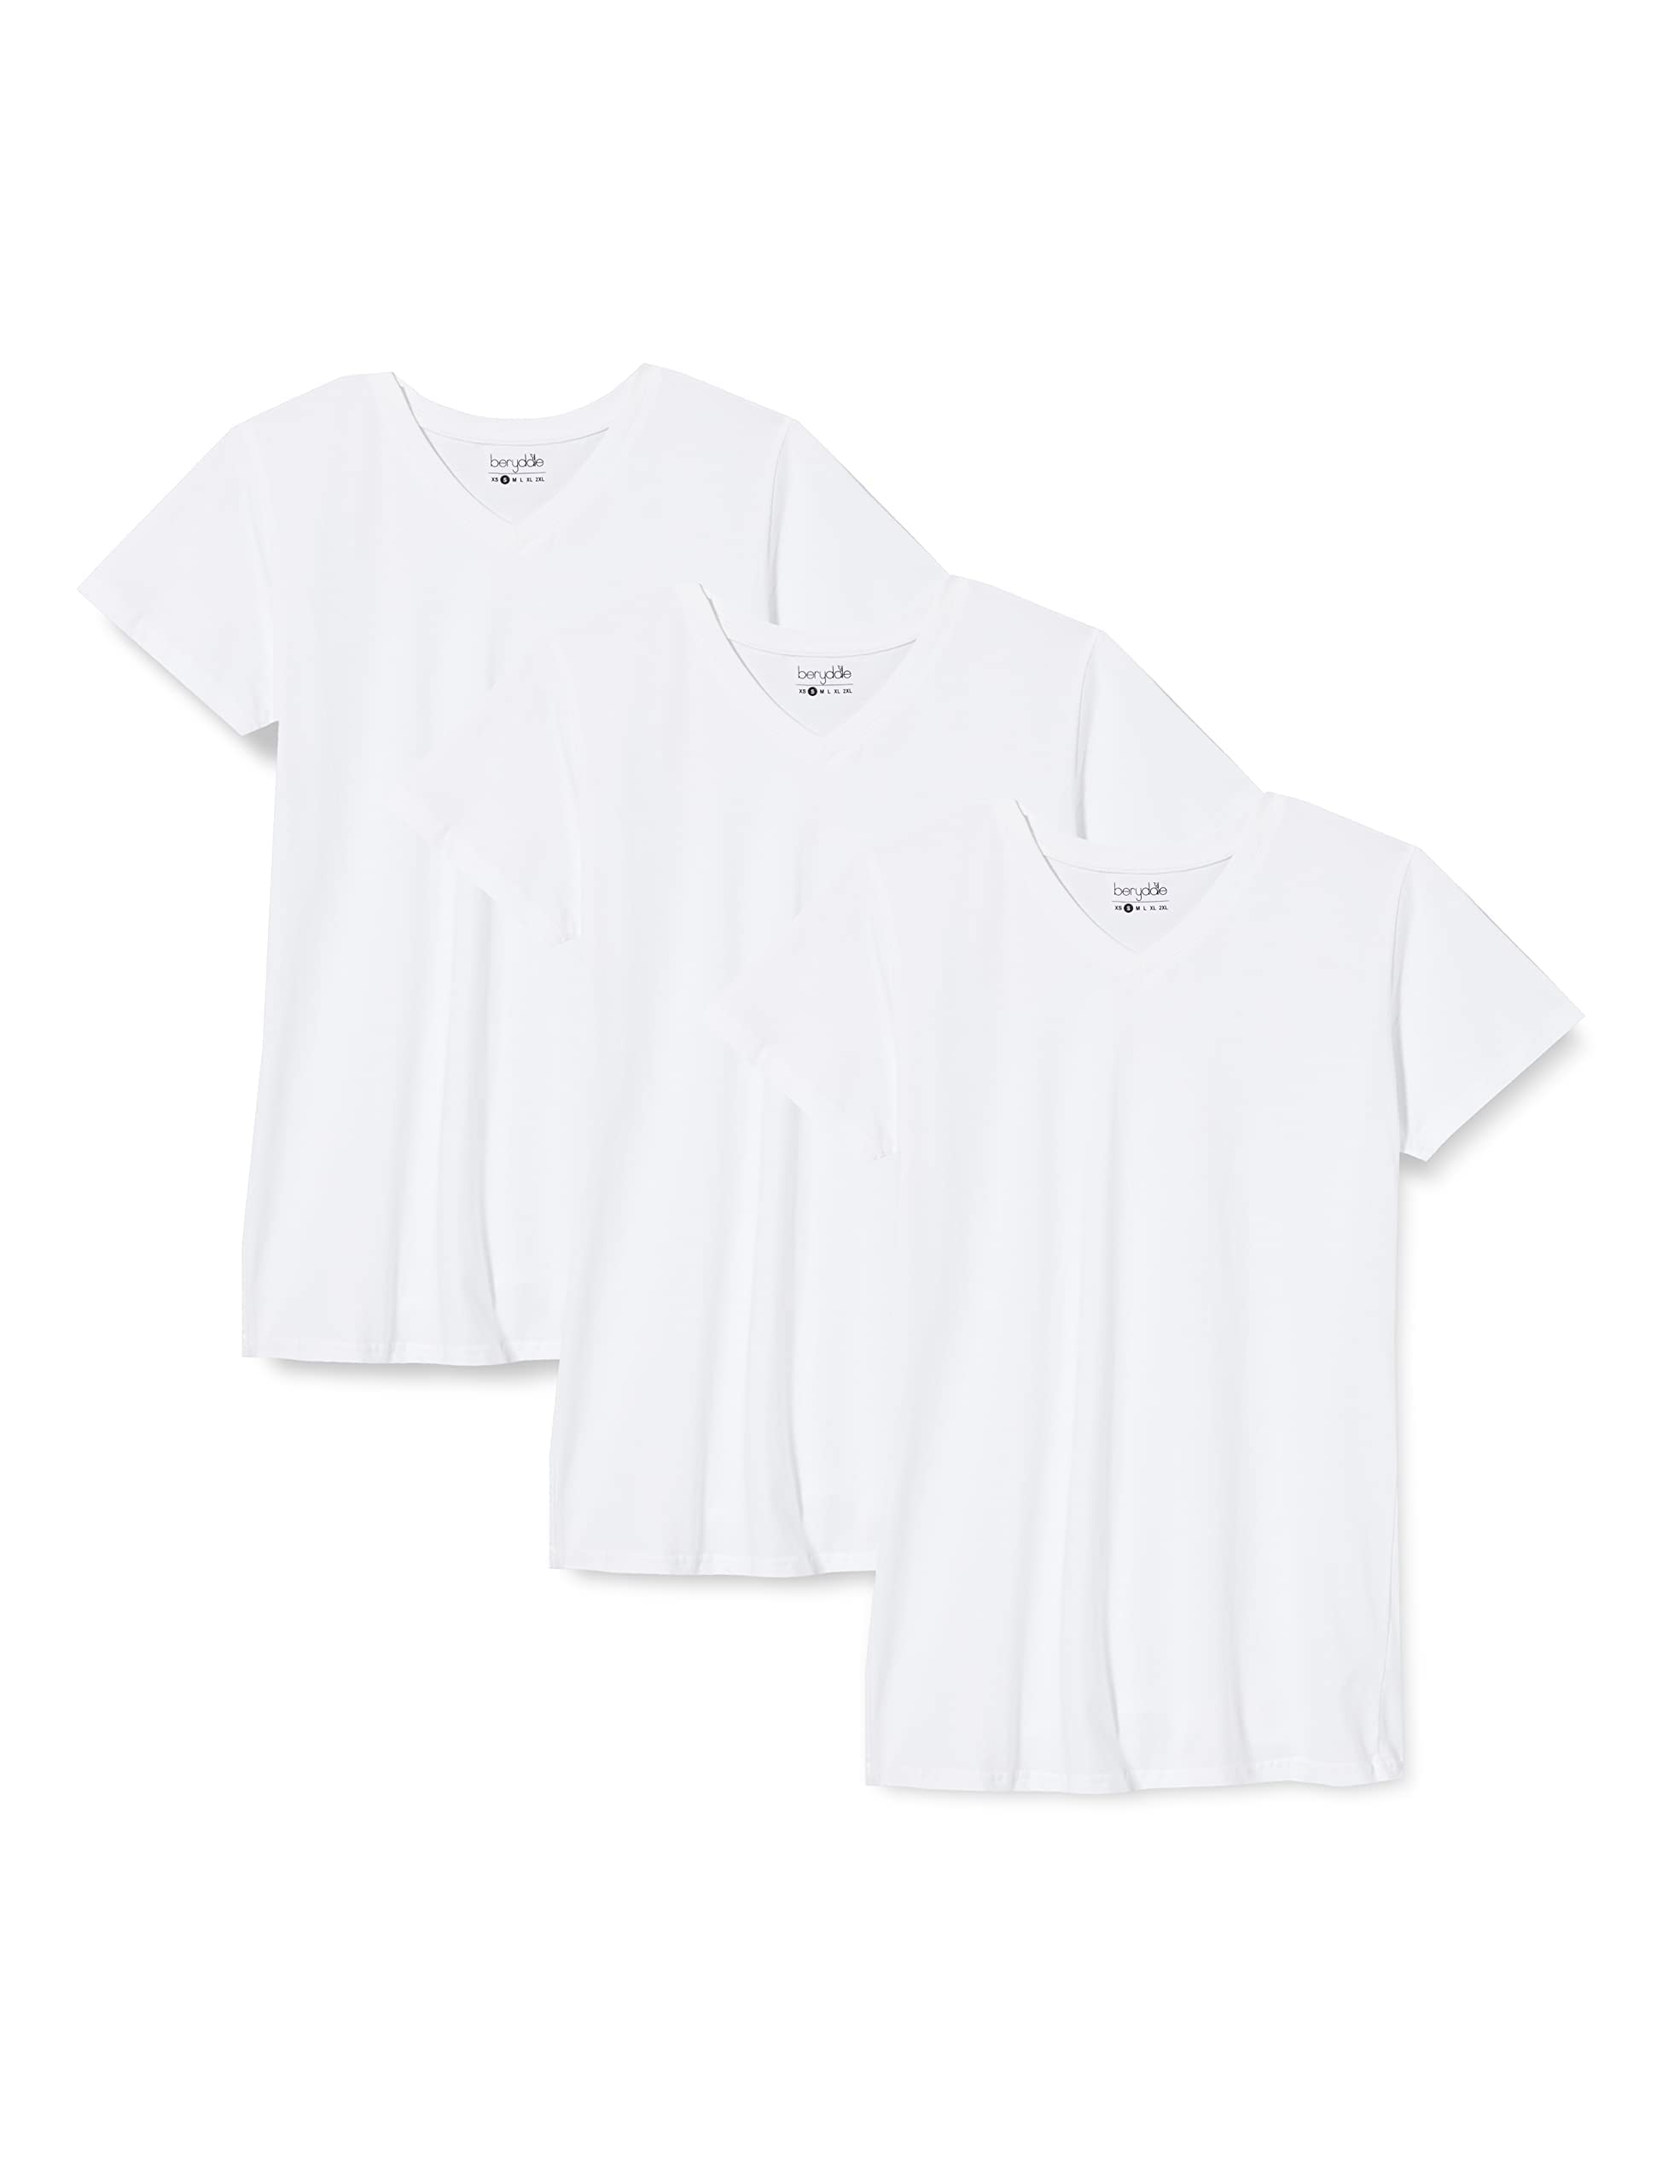 berydale Damen T-Shirt Bd158, Weiß - 3er Pack, M